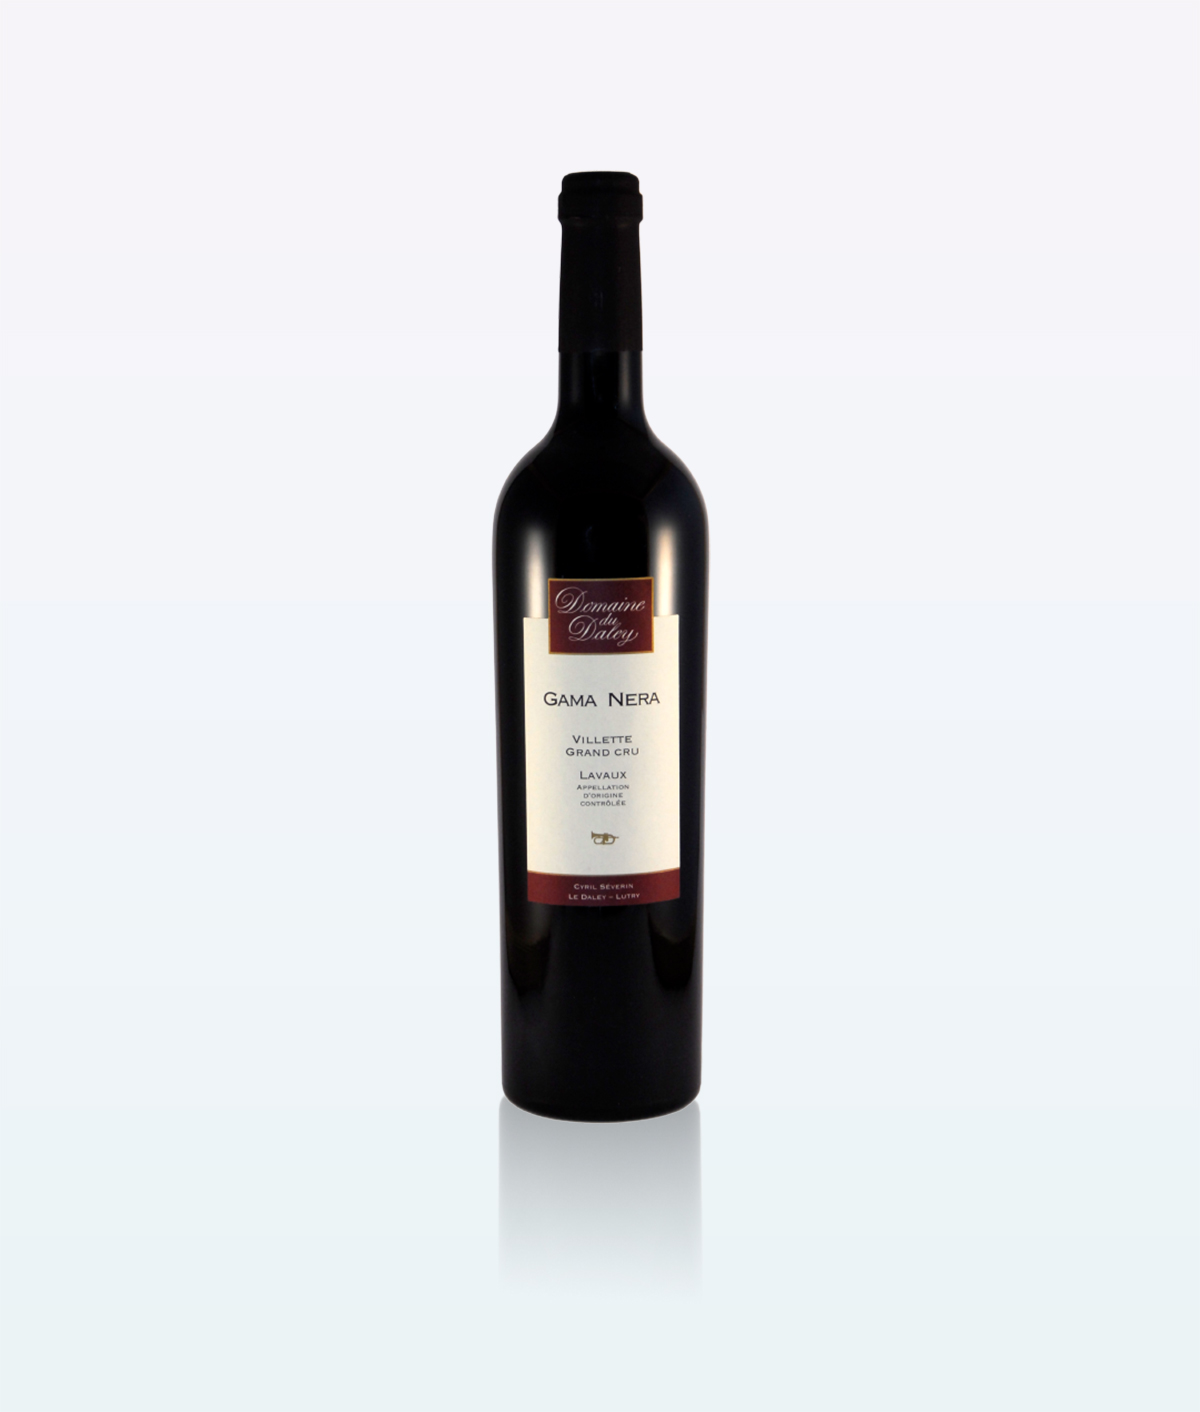 Gama Nera red wine